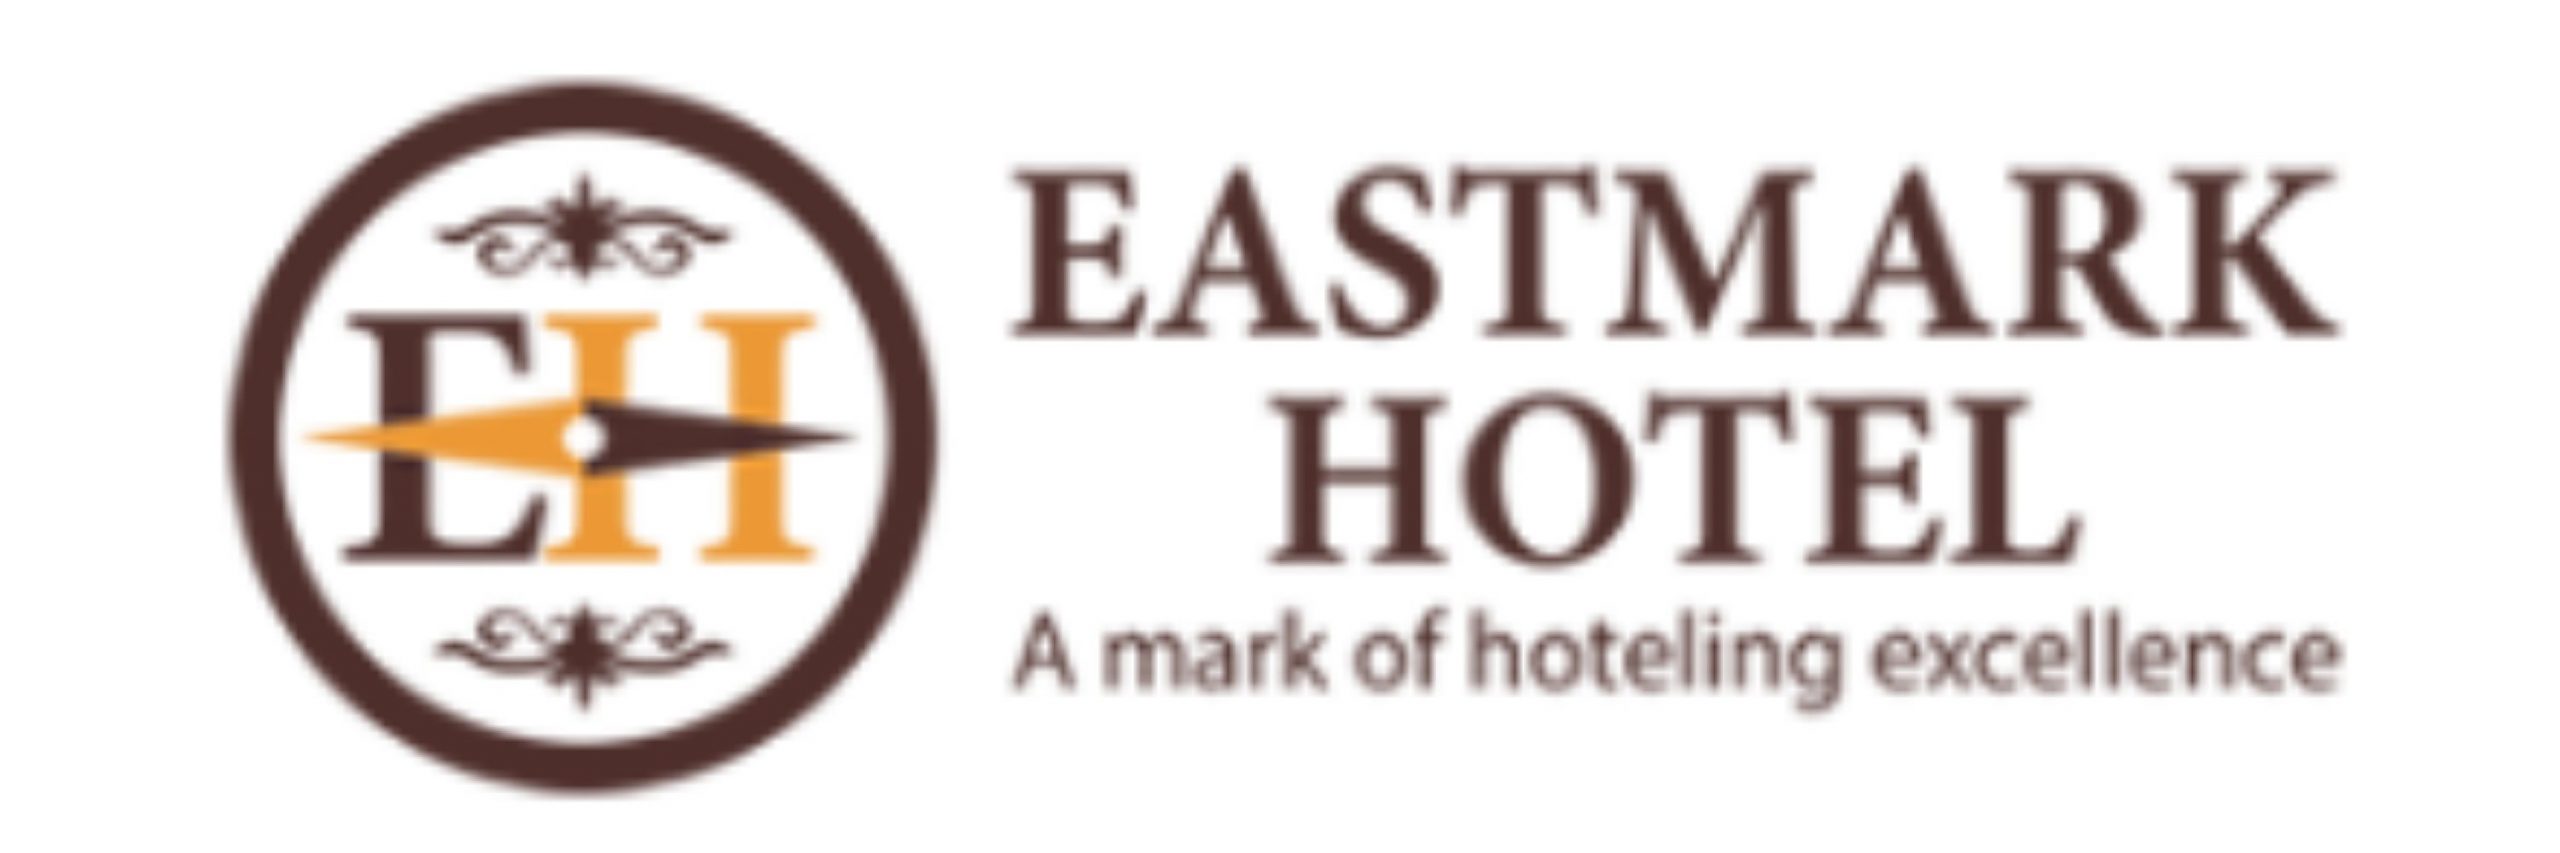 Eastmark Hotel |   Social meetings